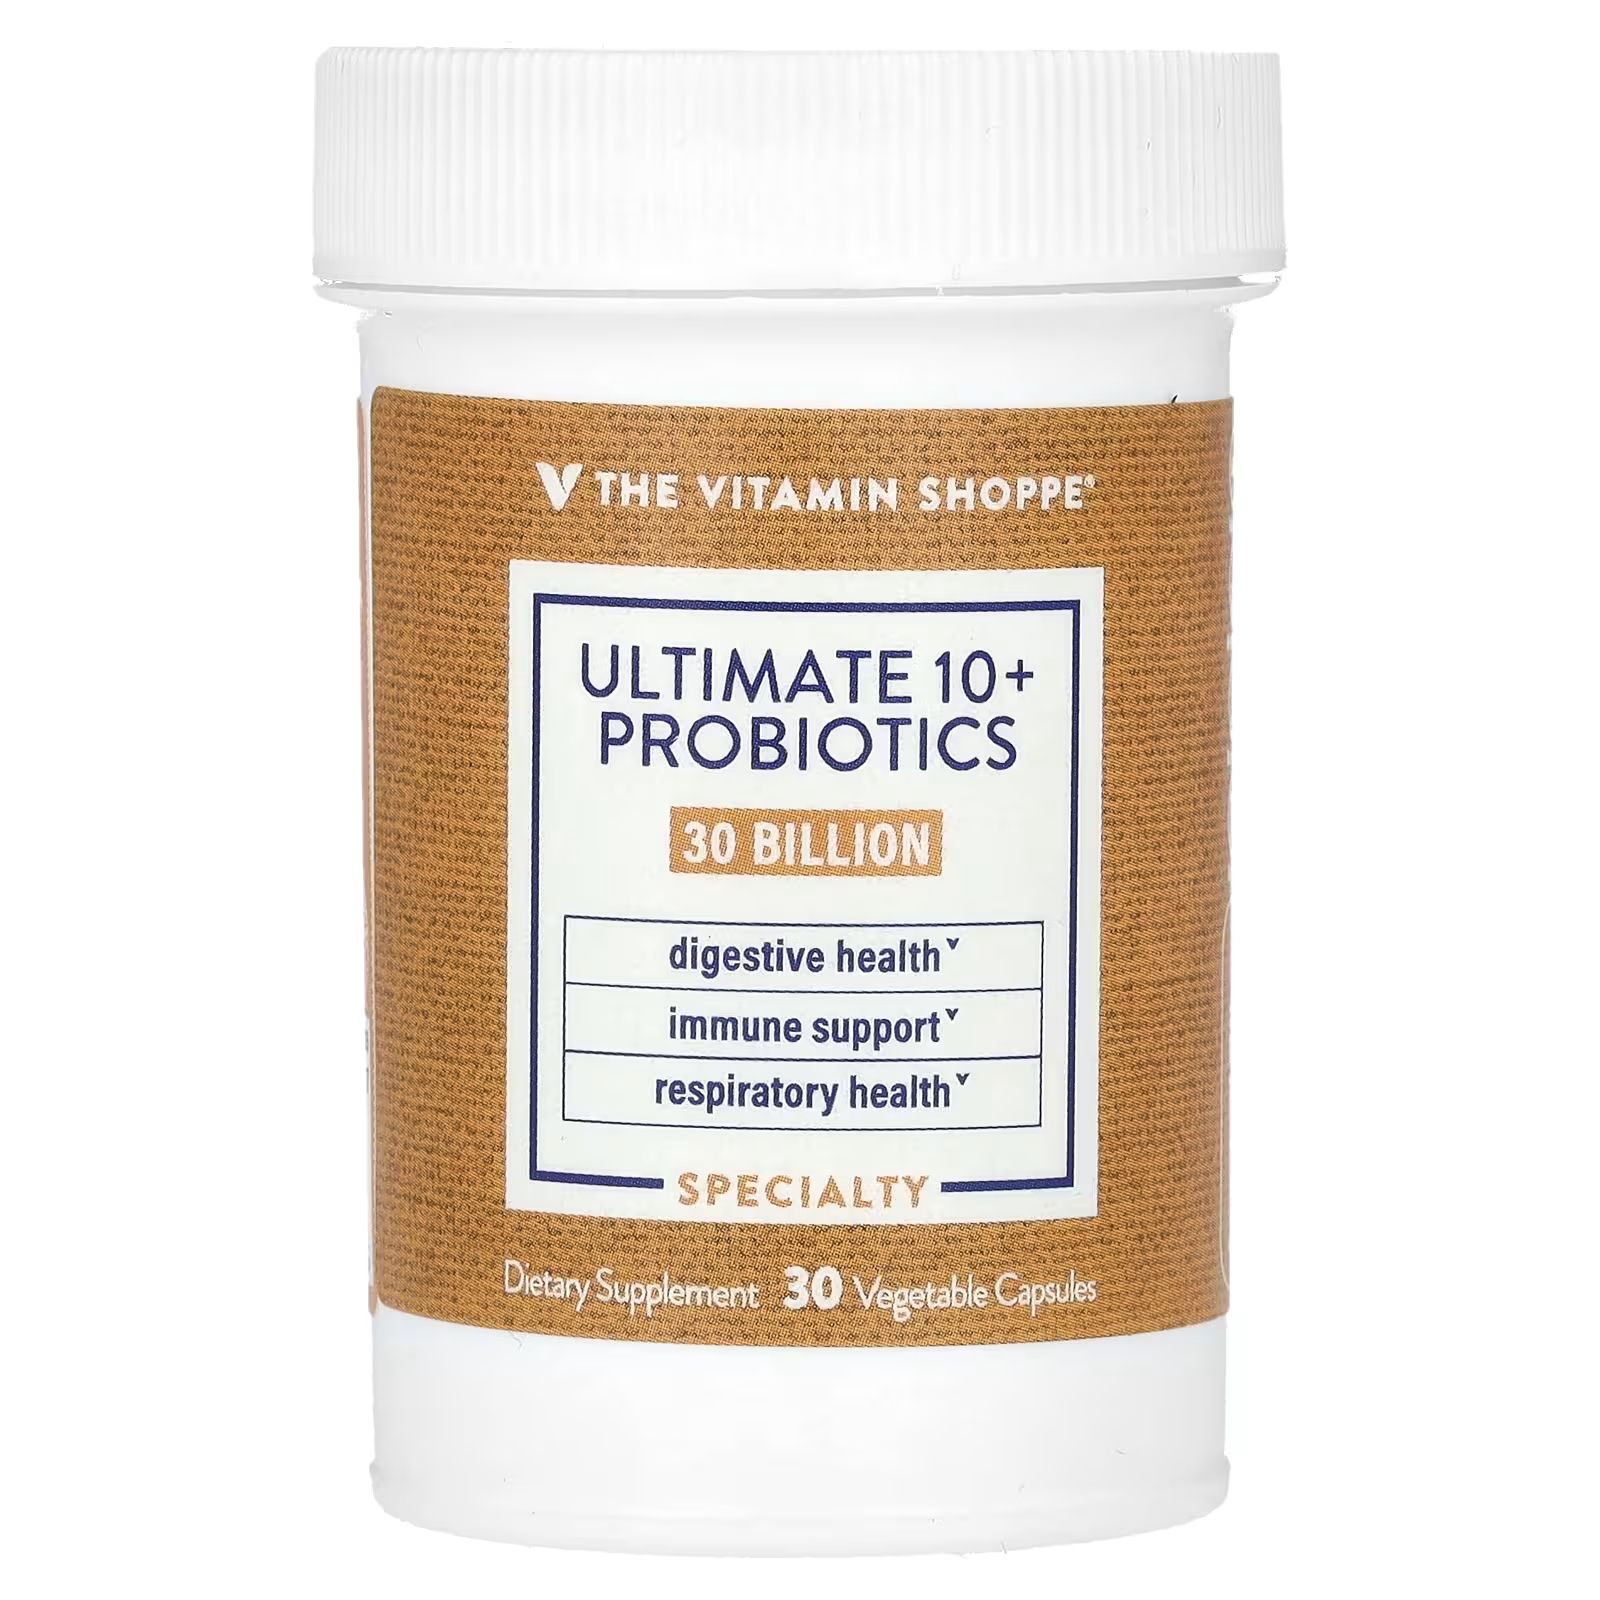 Пробиотик The Vitamin Shoppe Ultimate 10+ Probiotics 30 миллиардов КОЕ, 30 капсул culturelle пробиотики ultimate strength пробиотик 20 миллиардов кое 30 вегетарианских капсул